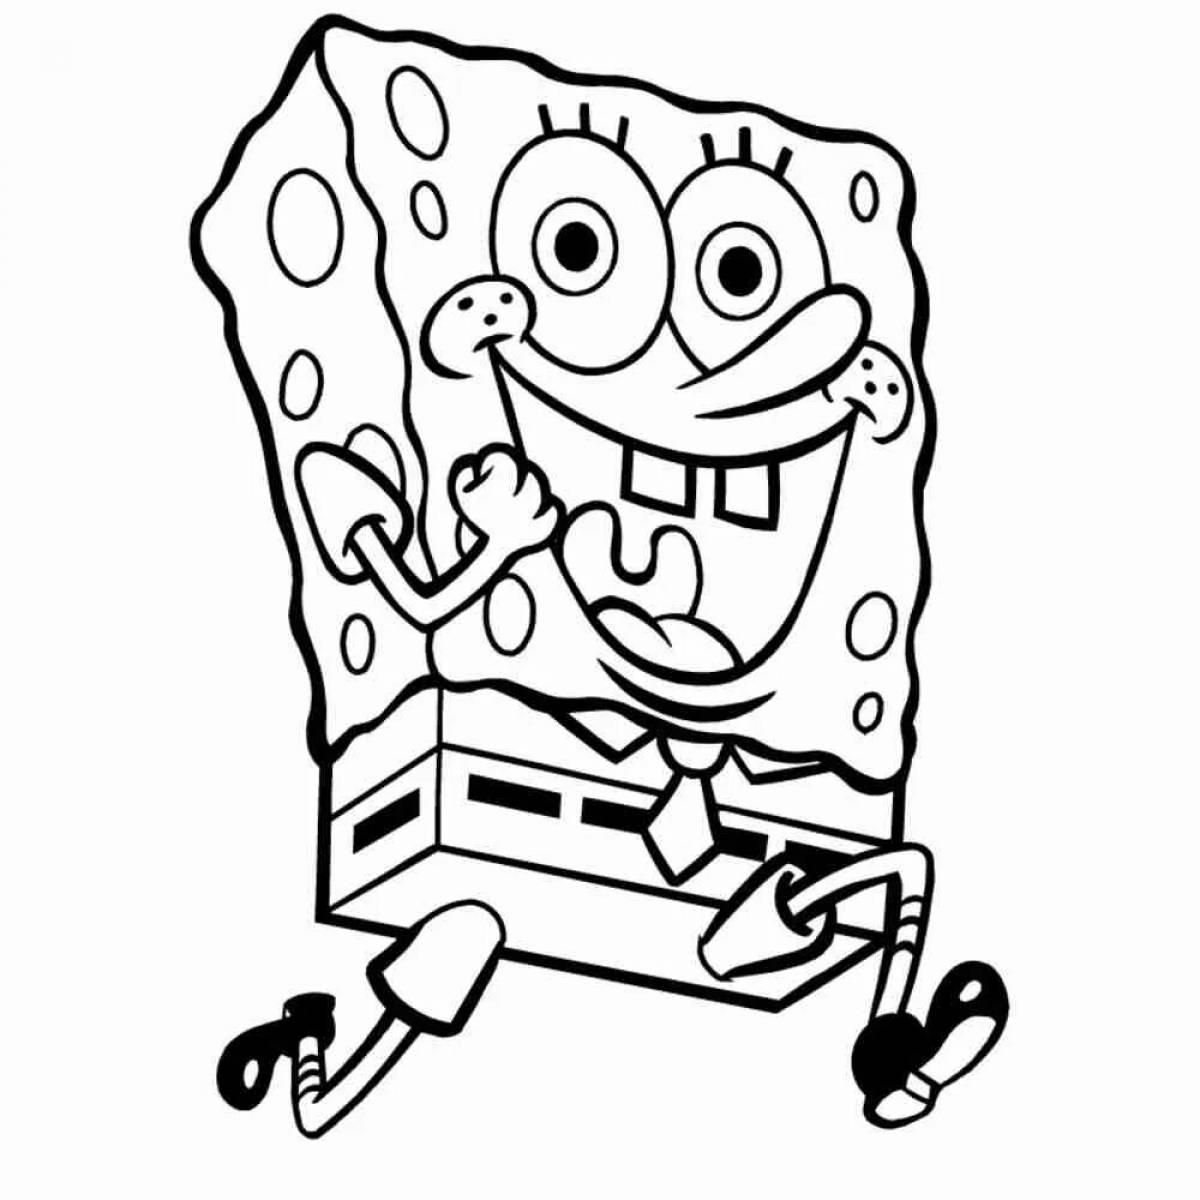 Spongebob pattern #2